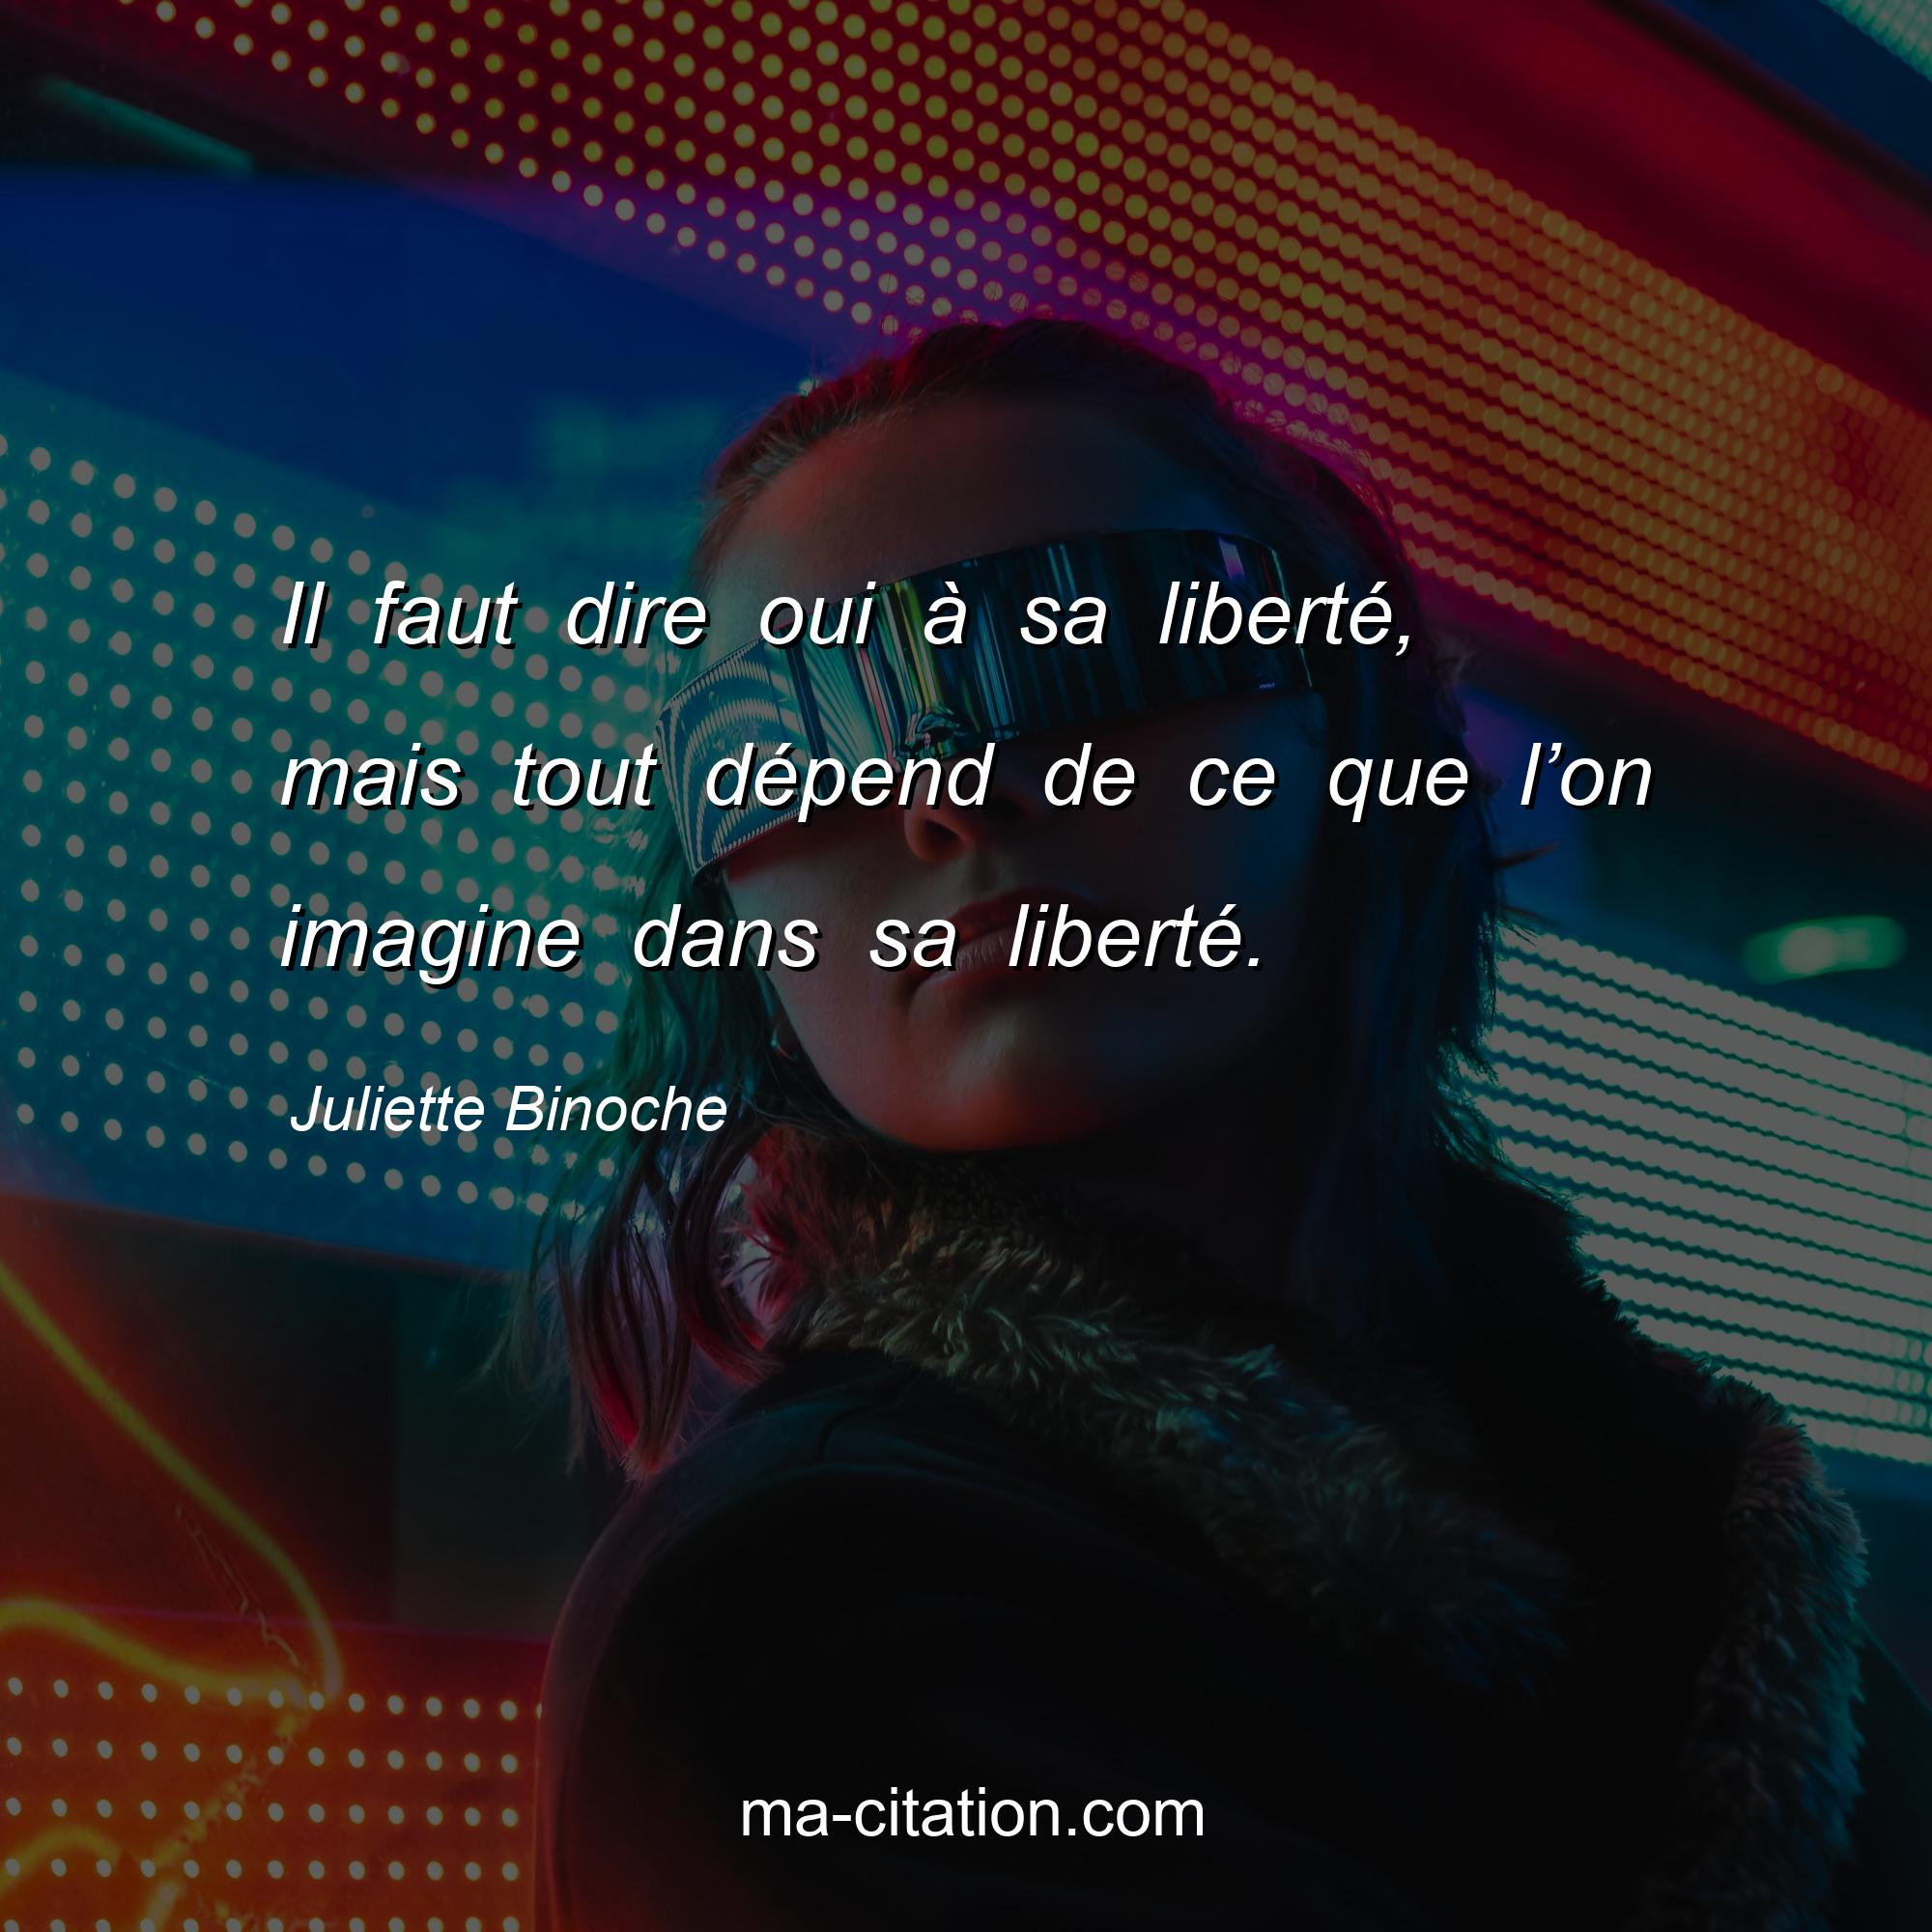 Juliette Binoche : Il faut dire oui à sa liberté, mais tout dépend de ce que l’on imagine dans sa liberté.